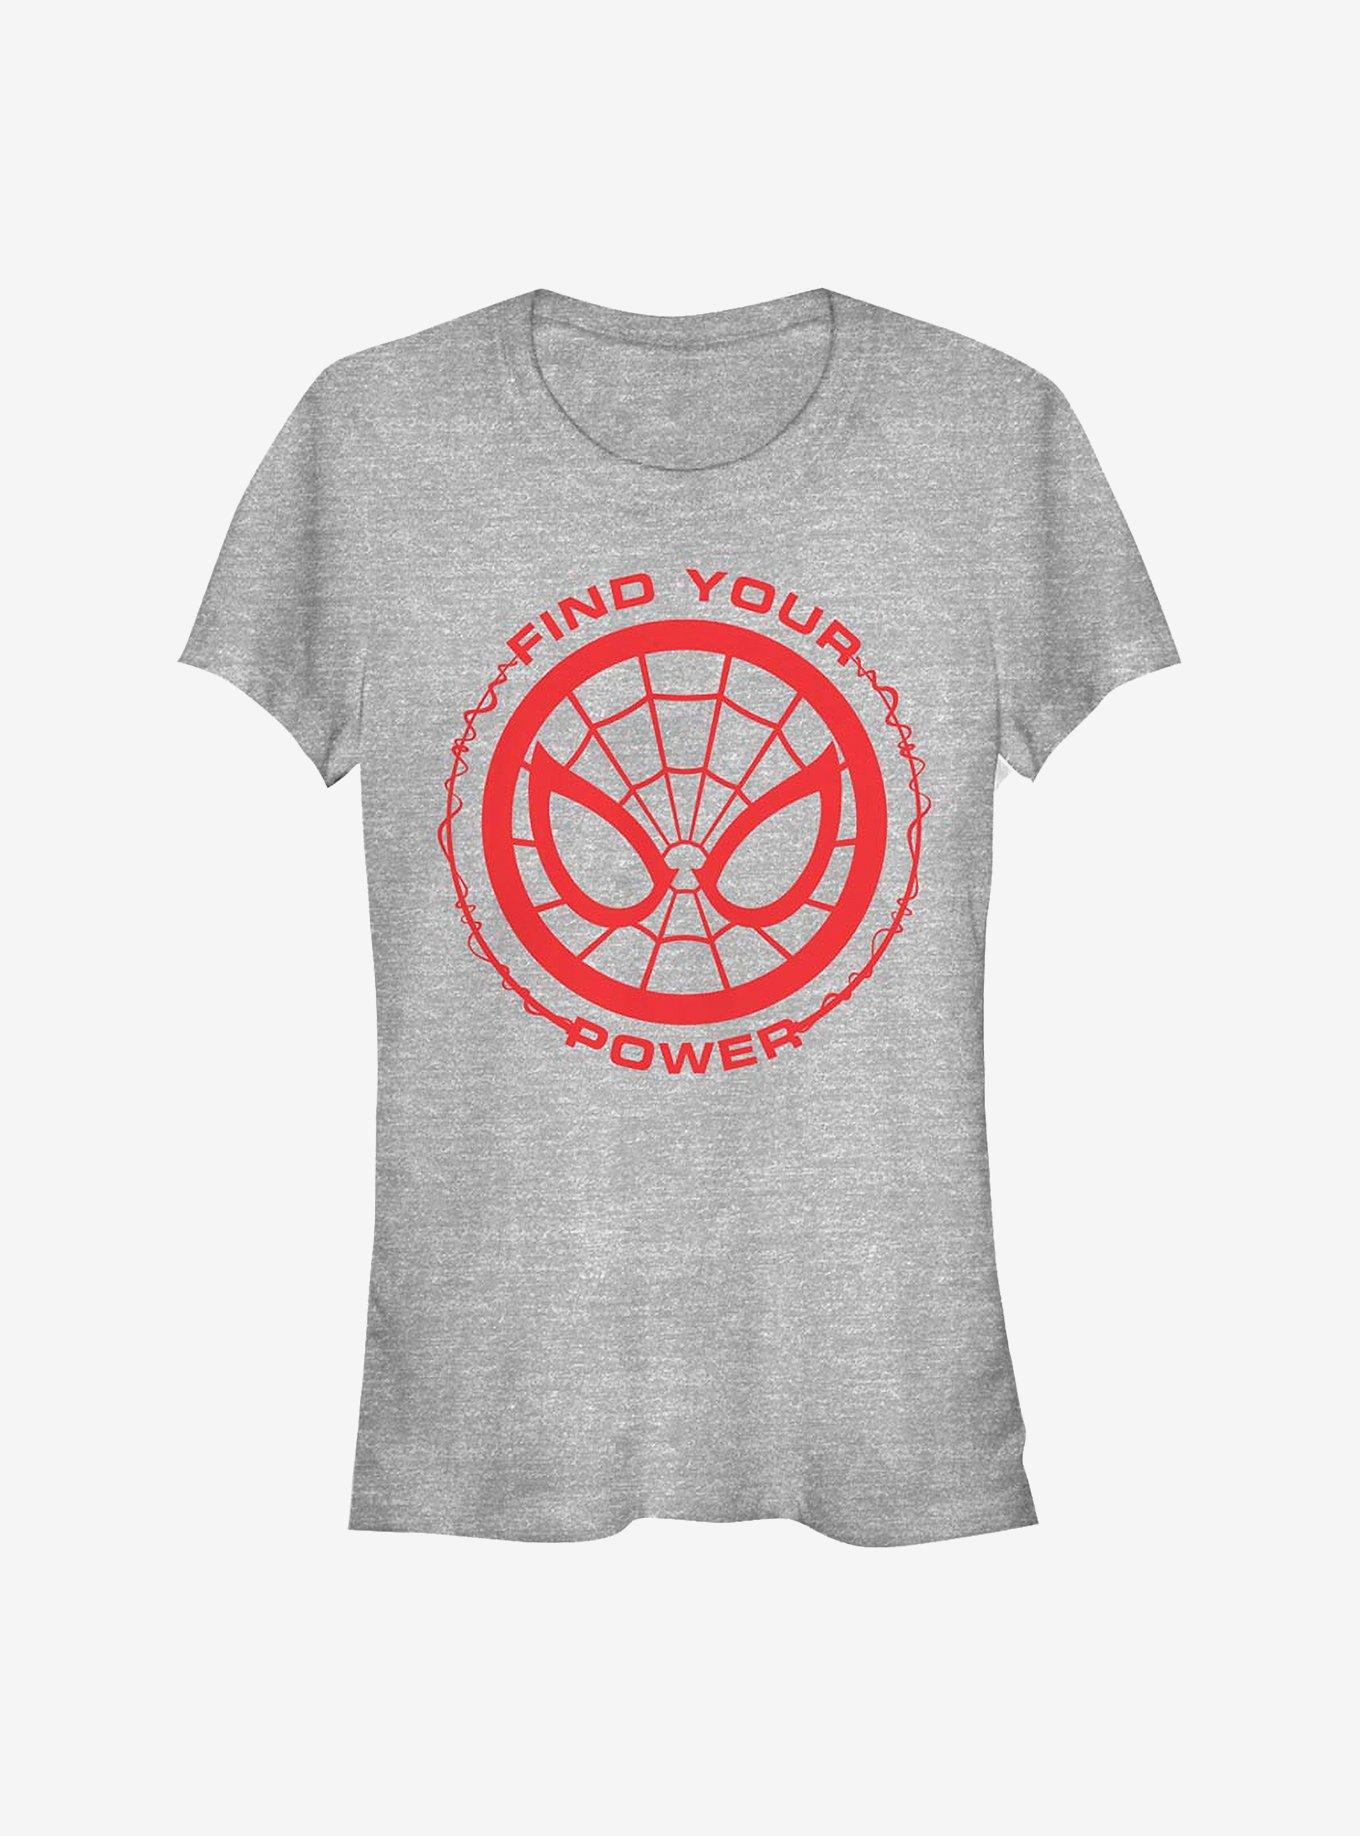 Marvel Spider-Man Spider Power Girls T-Shirt